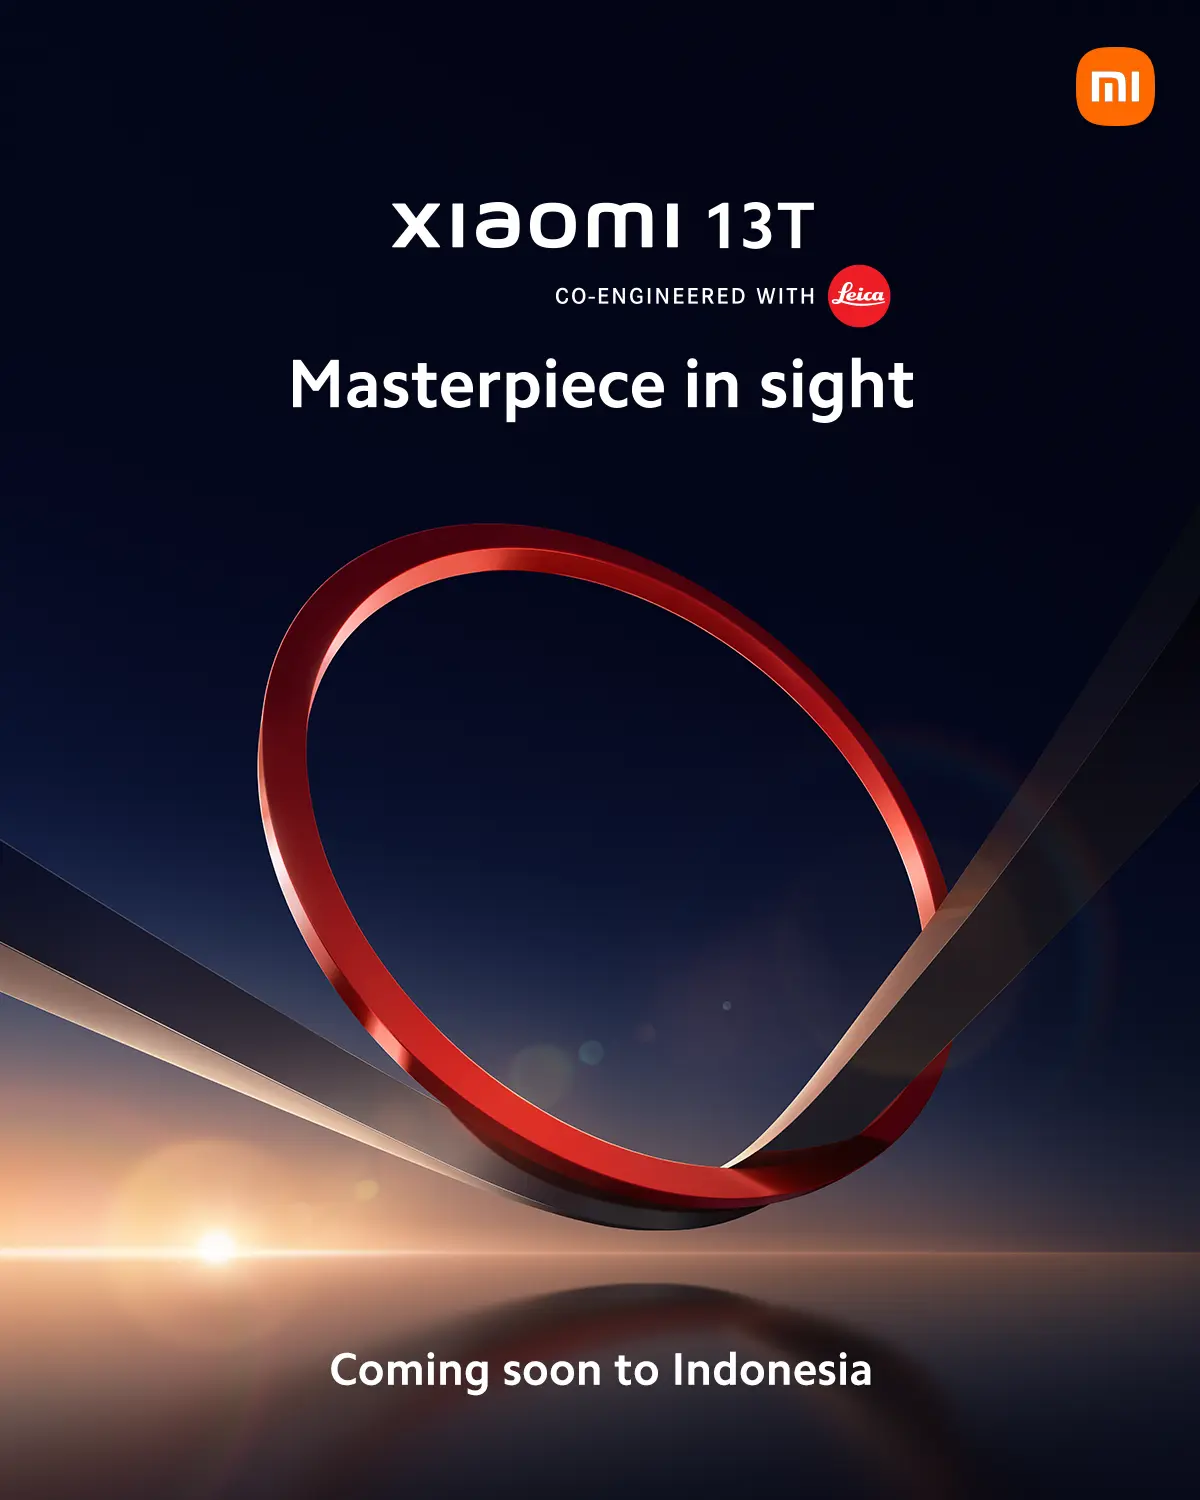 Resmi Dikonfirmasi, Xiaomi 13T Akan Segera Hadir di Indonesia